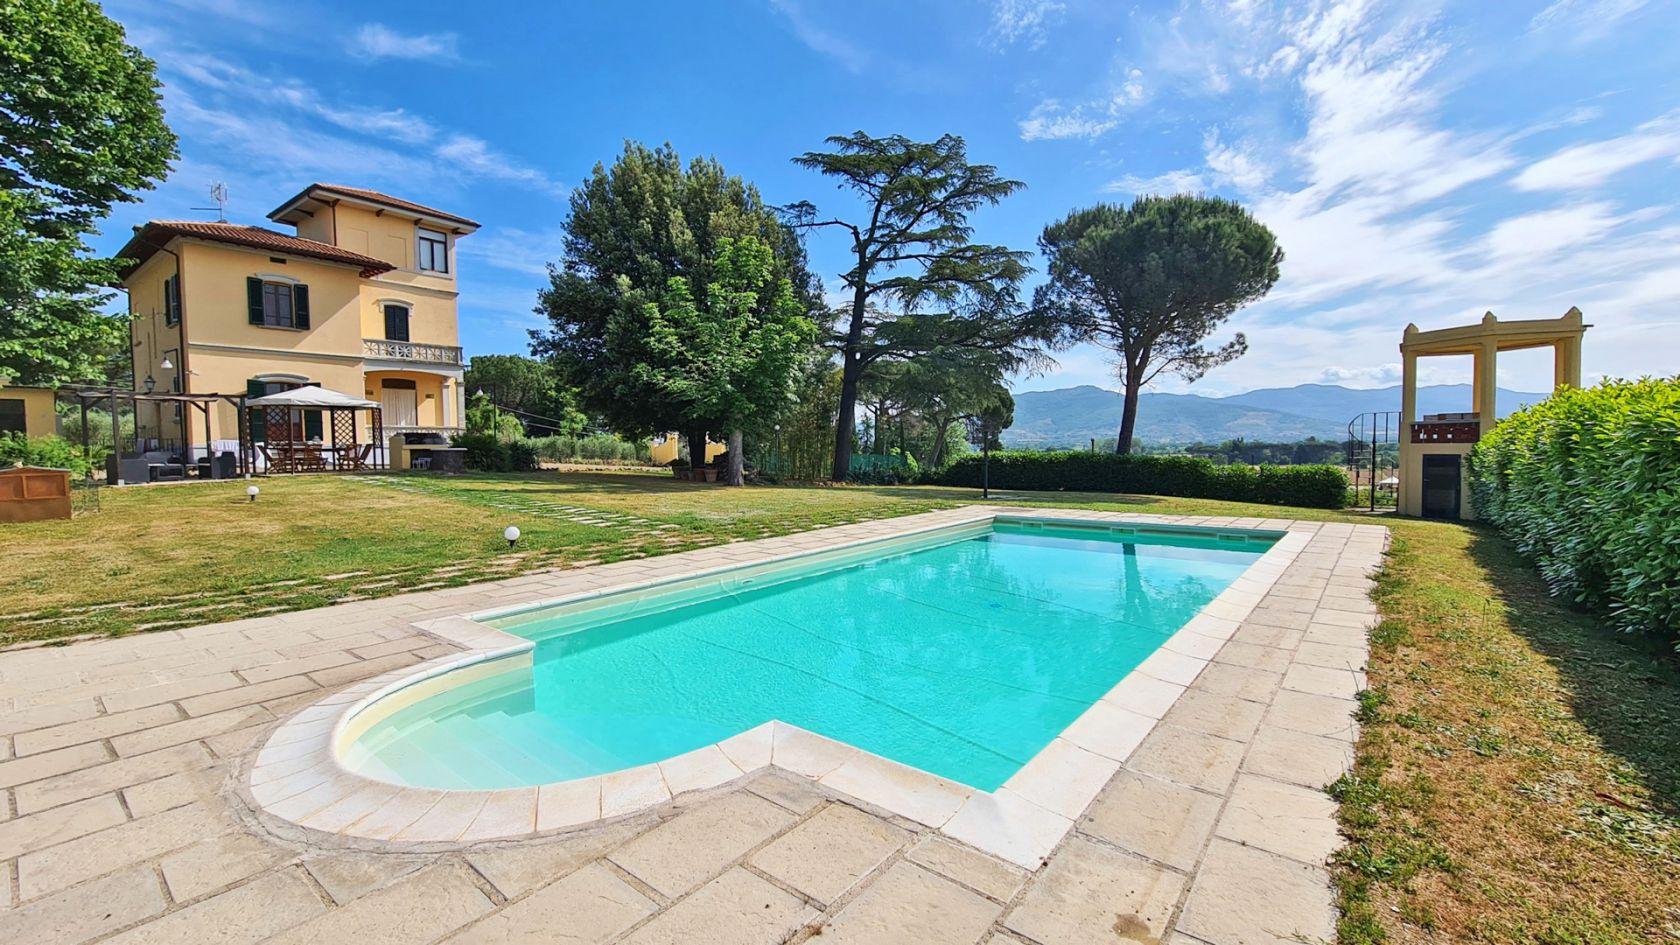 Toscana Immobiliare - Esclusiva villa con piscina in stile liberty